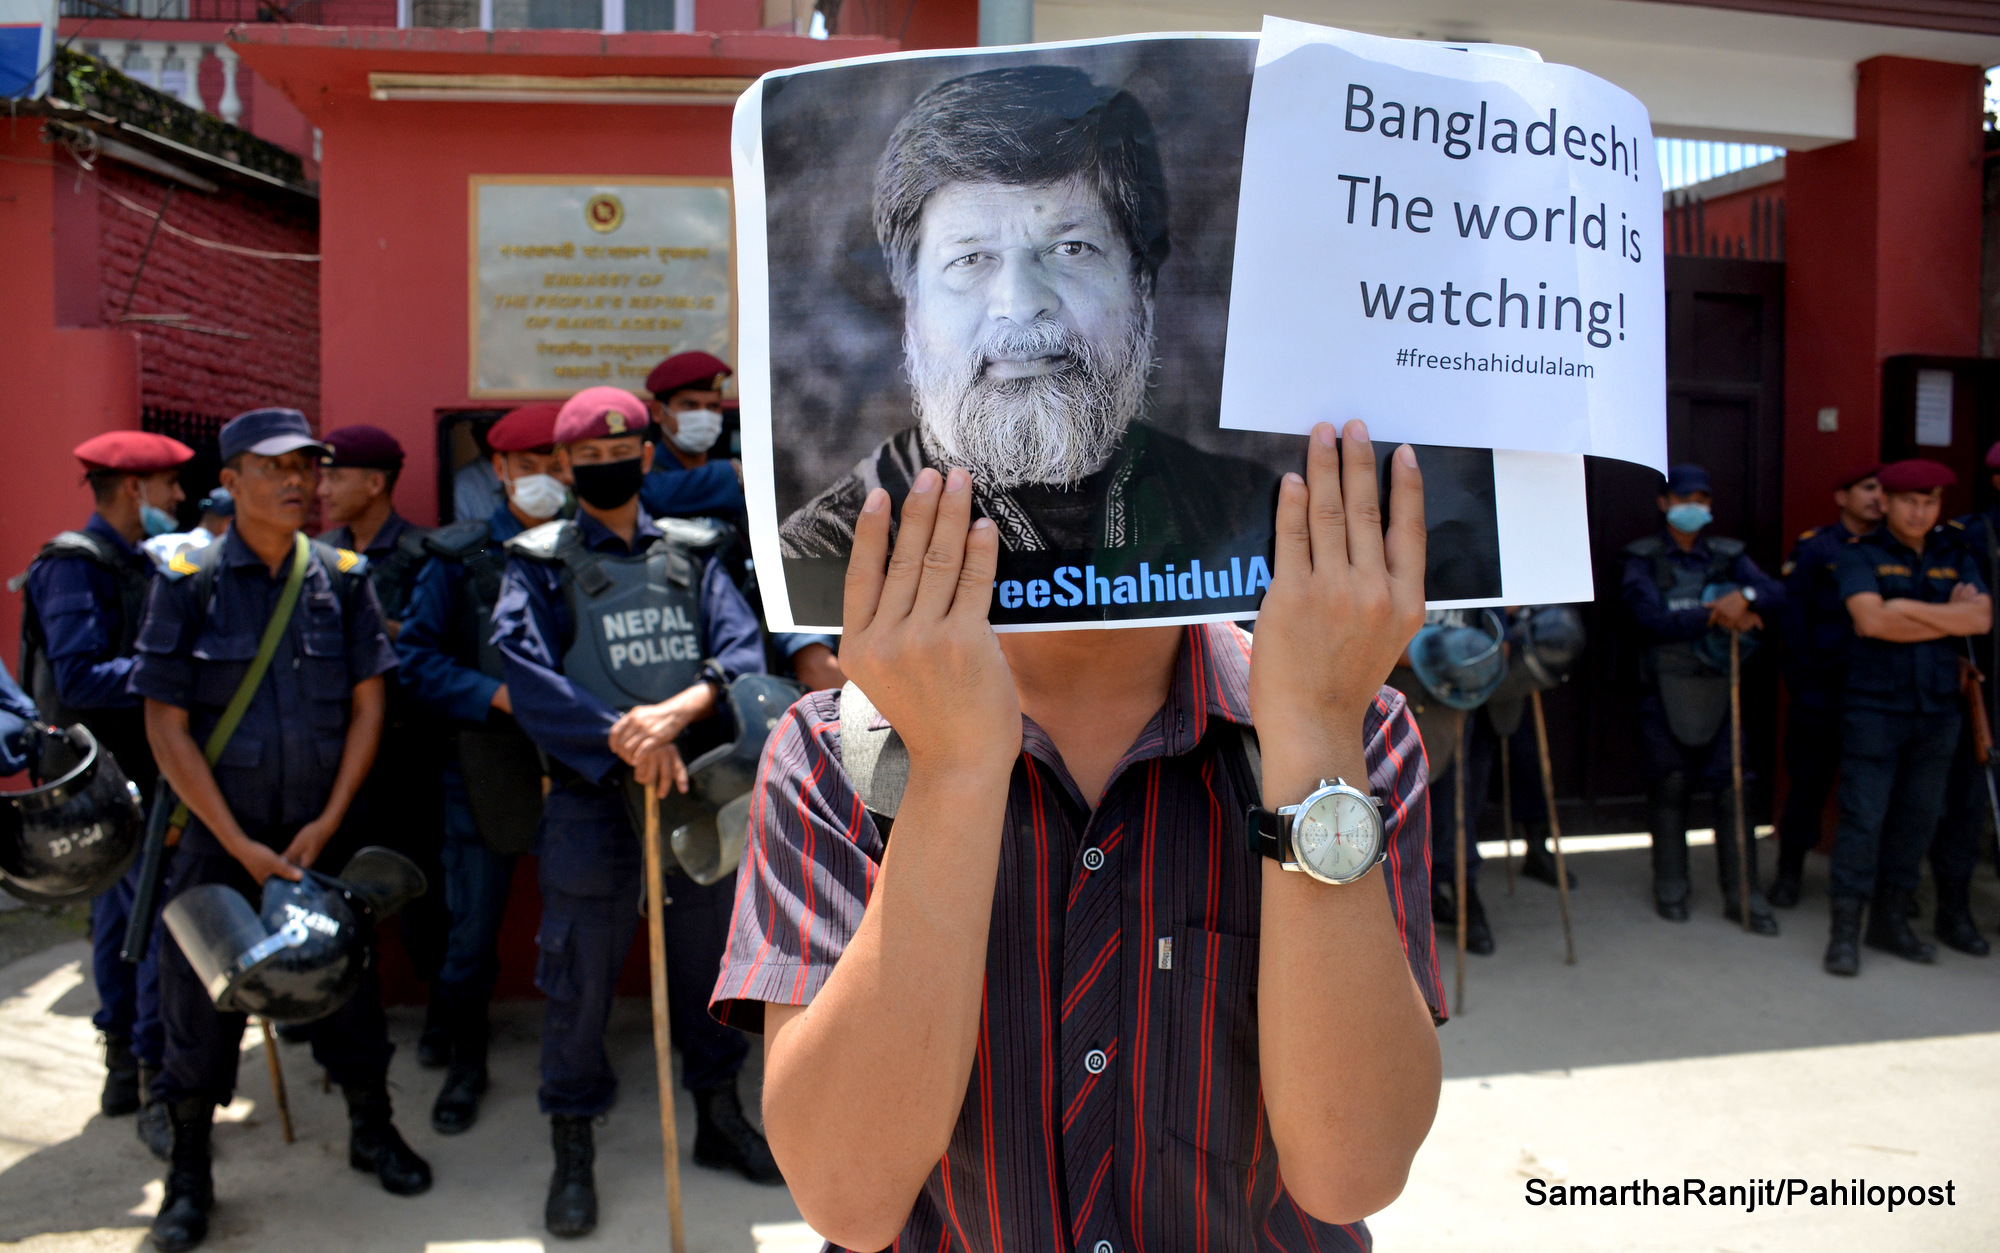 शाहिदुल रिहाईको माग गर्दै बंगलादेशी दुतावासमा नेपाली फोटोपत्रकारले गरे प्रदर्शन